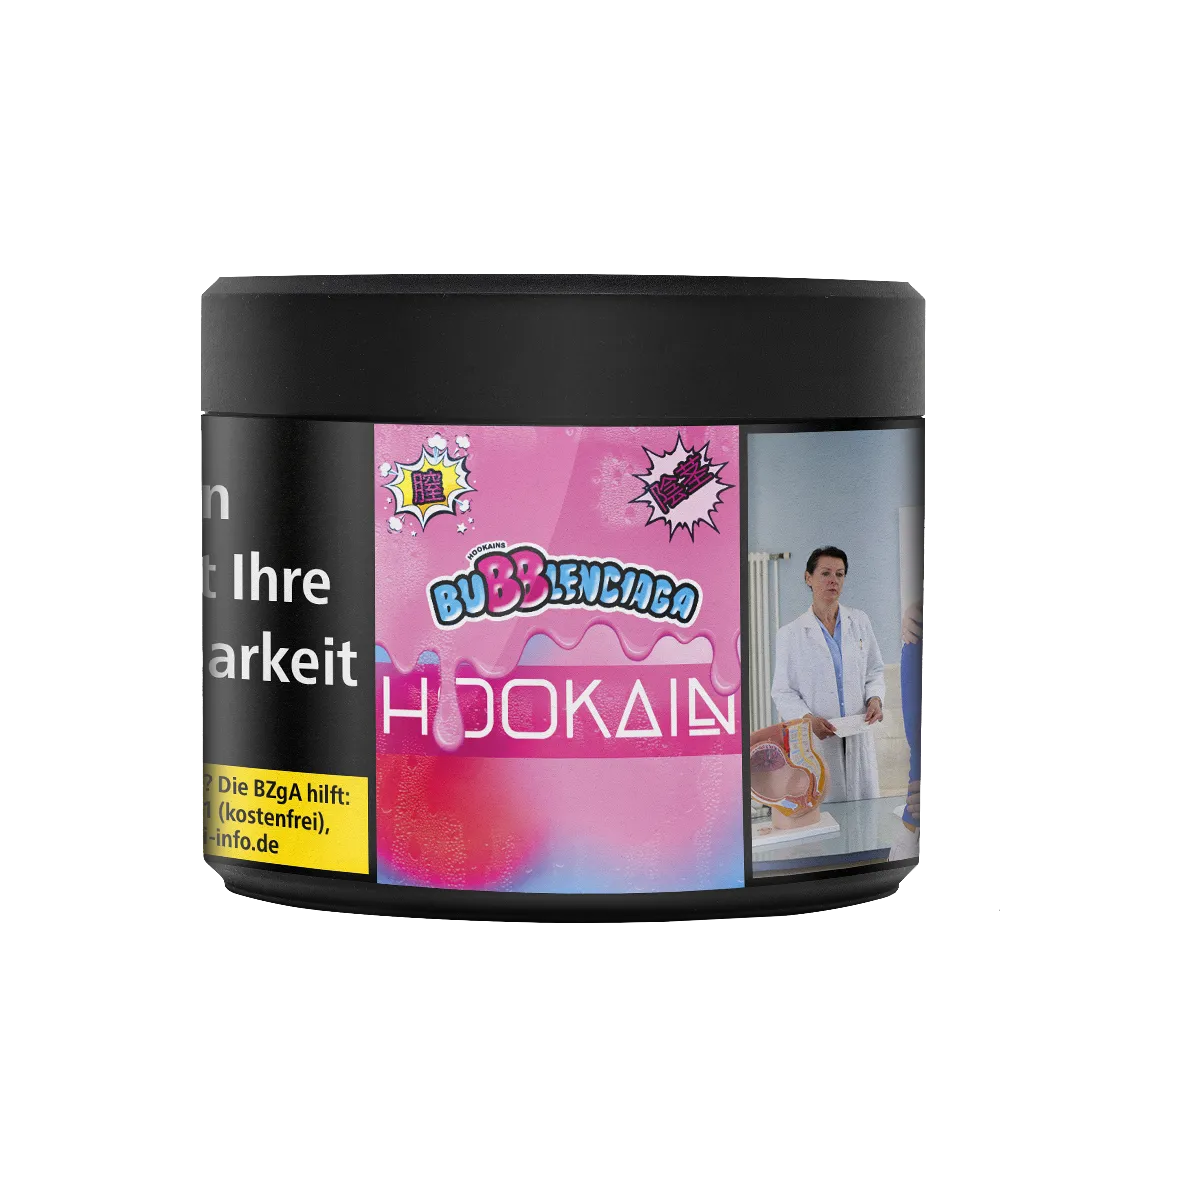 HOOKAiN Bubblenciaga 200g Shisha Tabak Shop Online bestellen